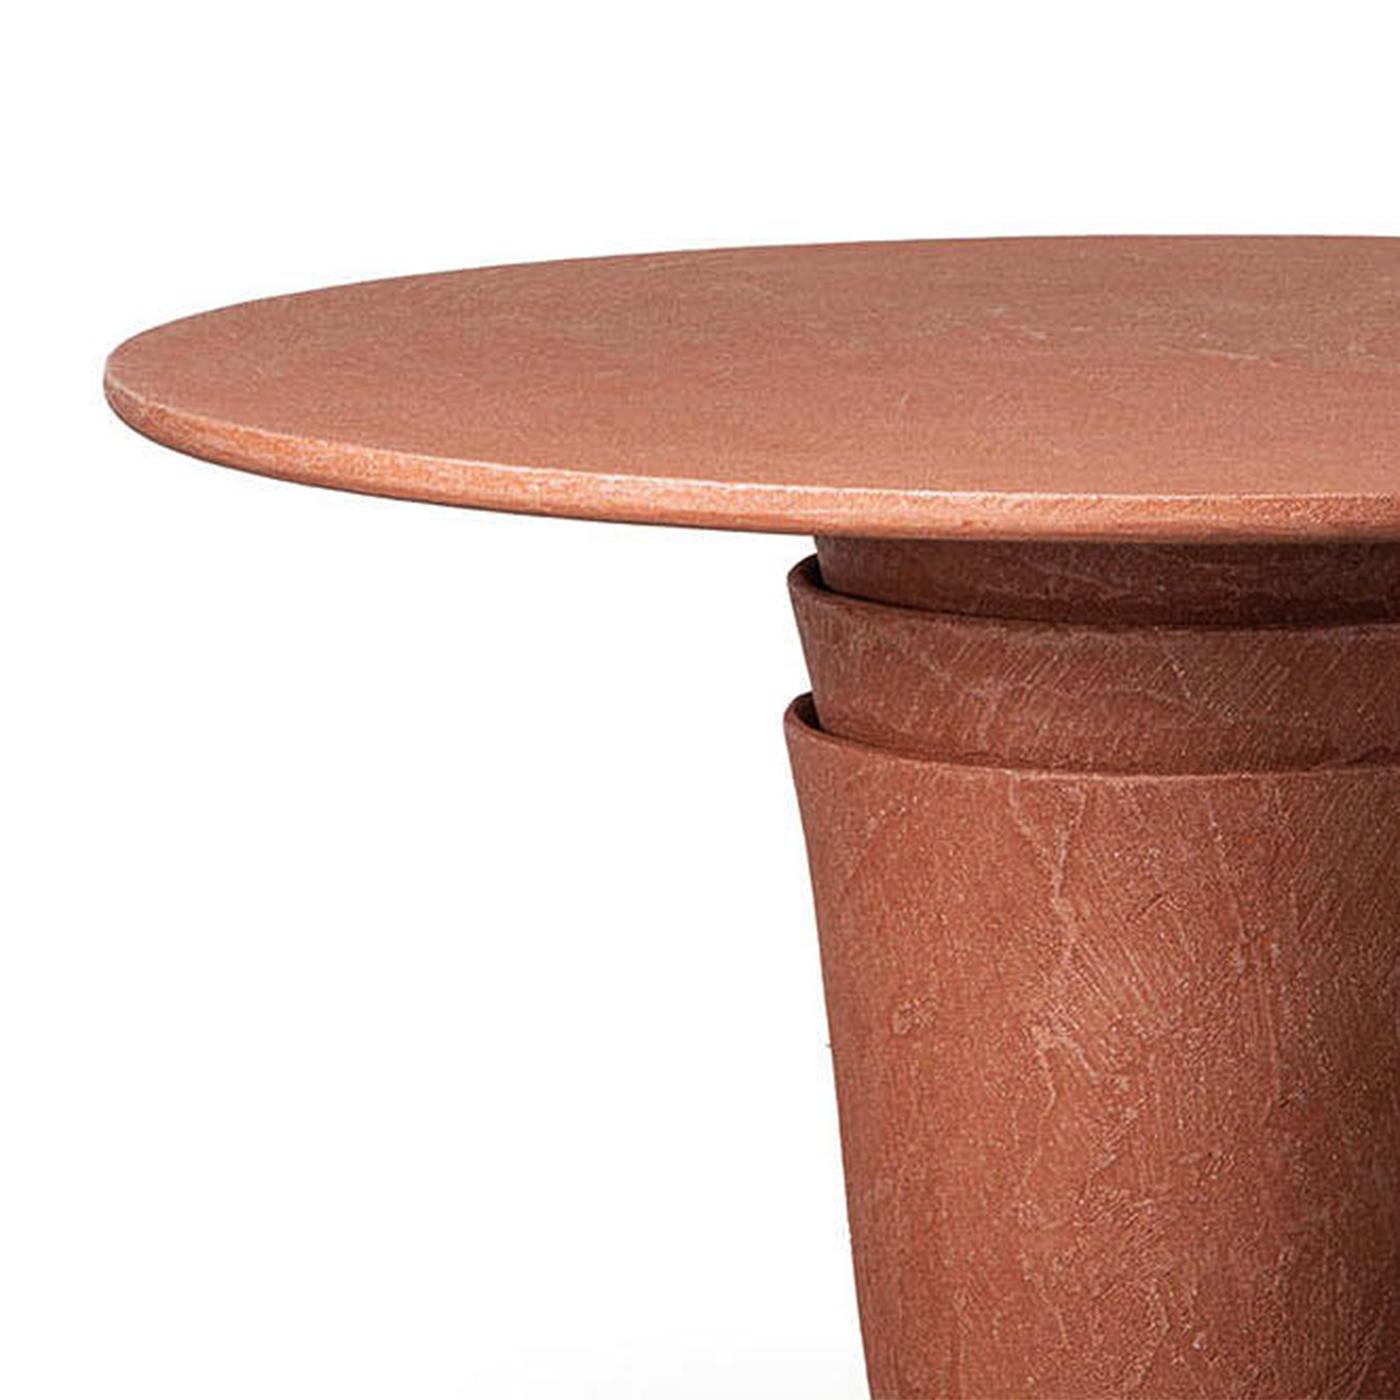 Table Vick Coral Round Outdoor avec plateau en bois en 
finition corail et avec base en résine polymère finition corail.
Également disponible en finition ciment, sur demande.